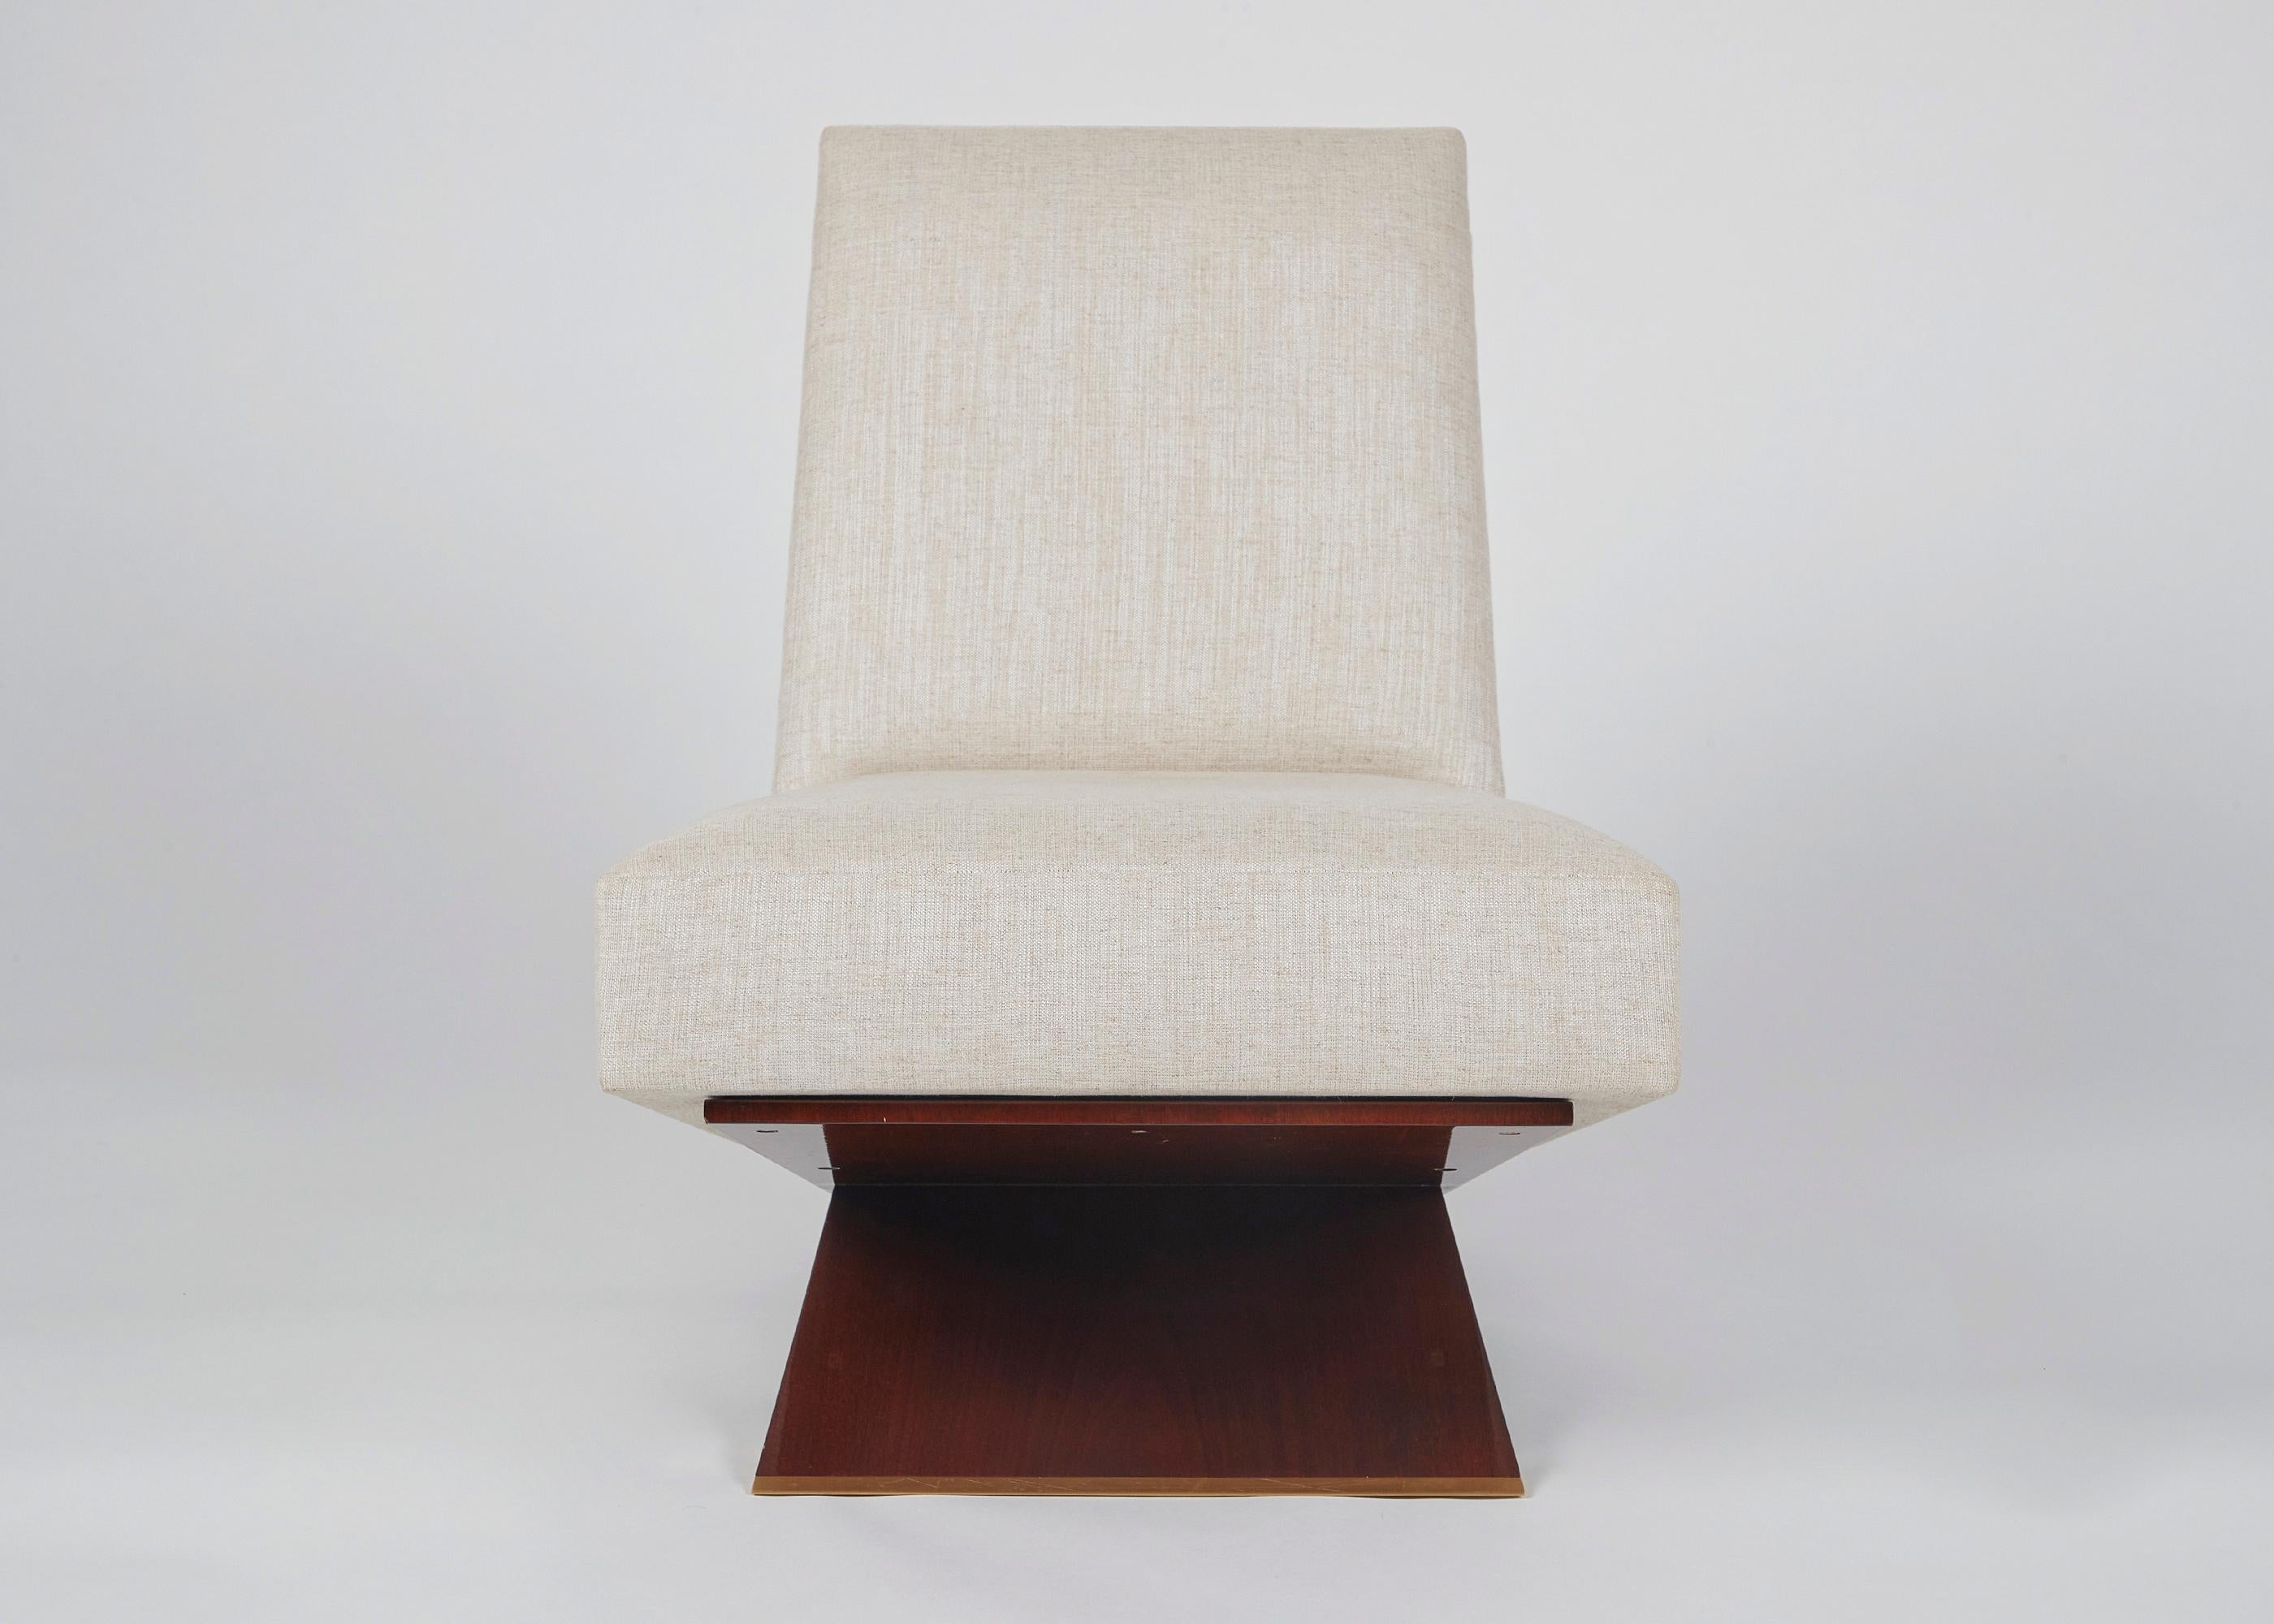 Equipoise, der visuell auffällige Loungesessel von Thomas Pheasant, besitzt das elegante Gleichgewicht, das sein Name suggeriert. Er ruht auf drei perfekt platzierten Ebenen aus poliertem Holz, die sich kreuzen, um die bequeme Sitzfläche und